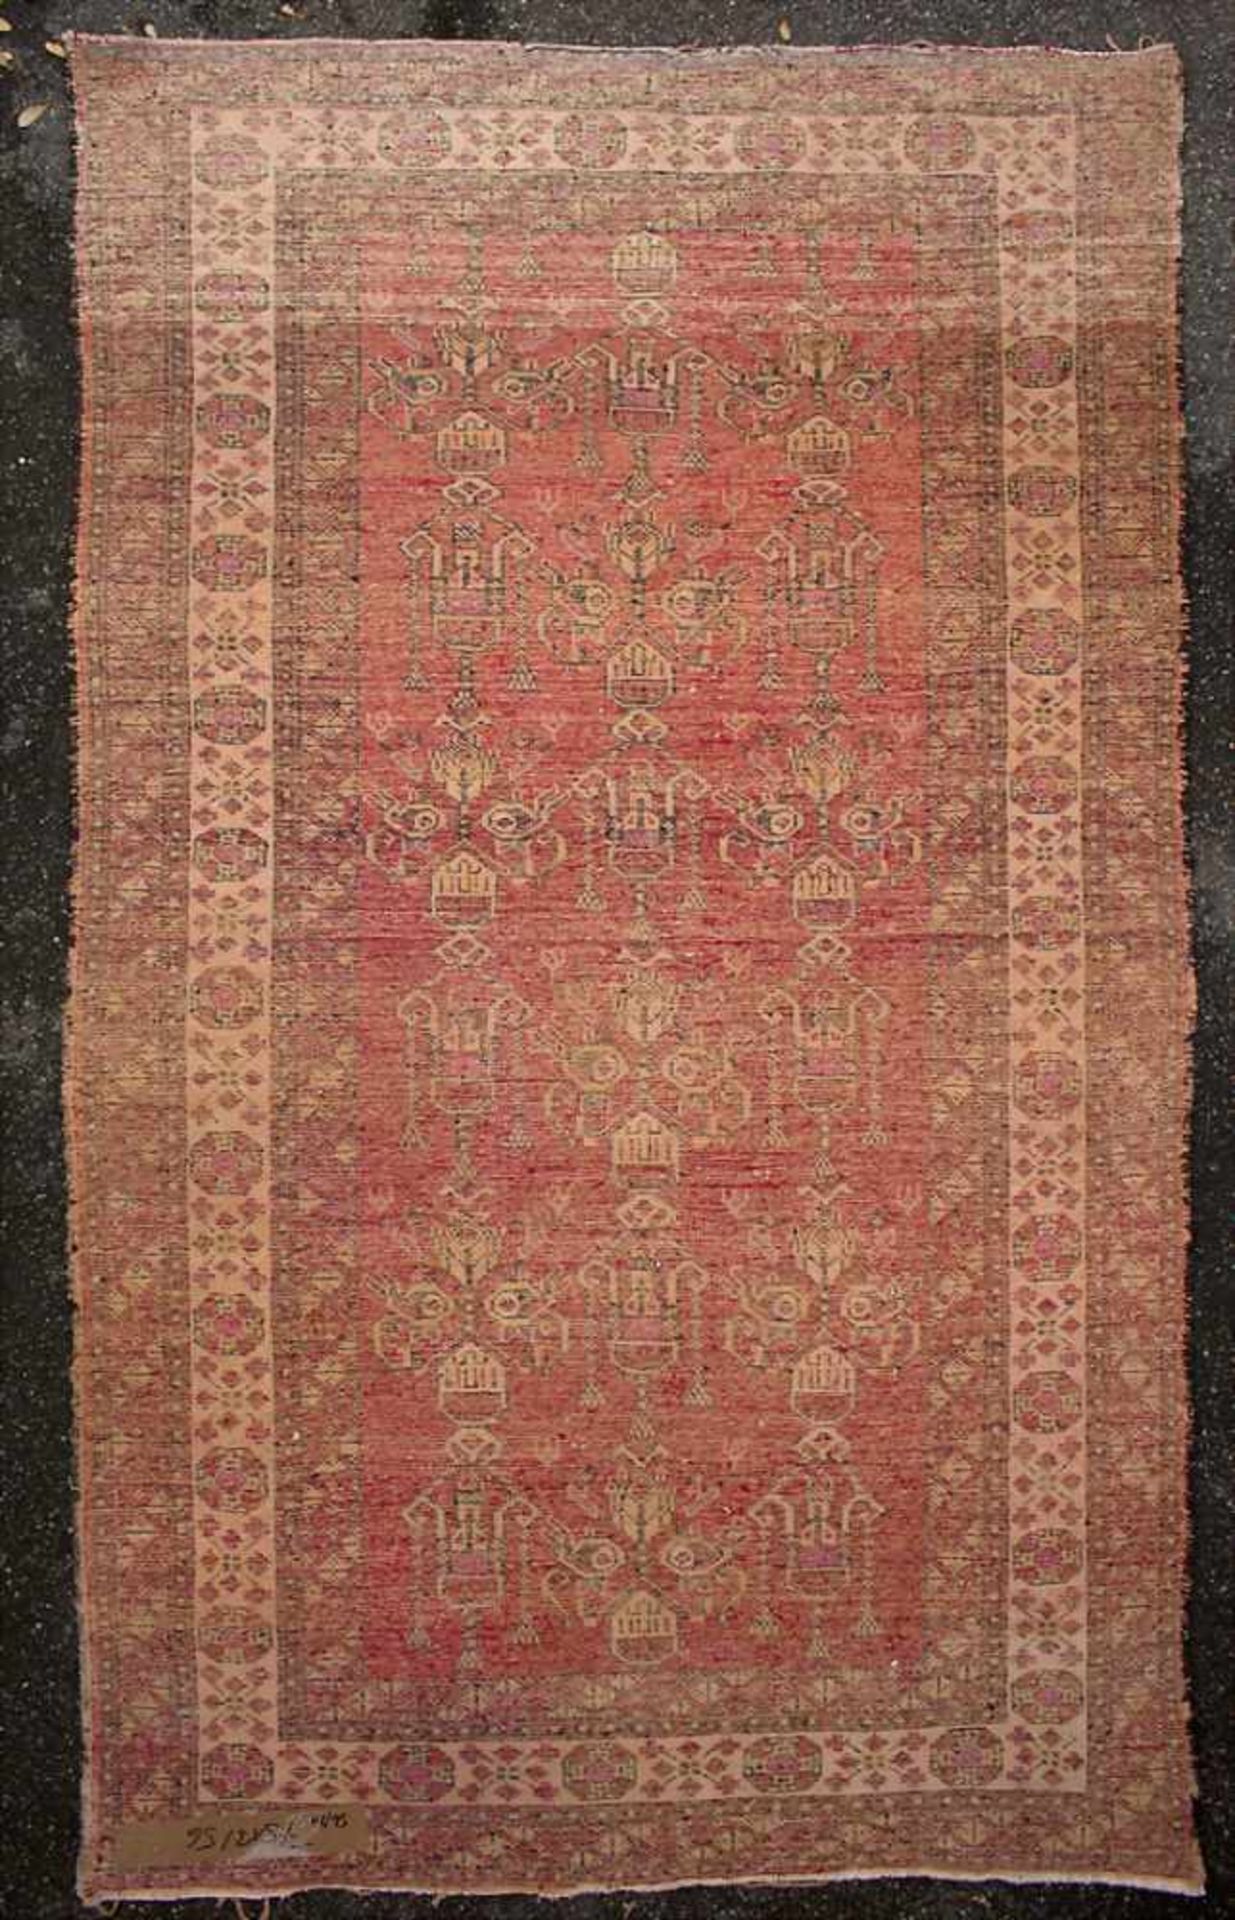 Orientteppich / An oriental carpetMaterial: Wolle auf Baumwolle, Maße: 208 x 122 cm, Zustand: - Image 2 of 5